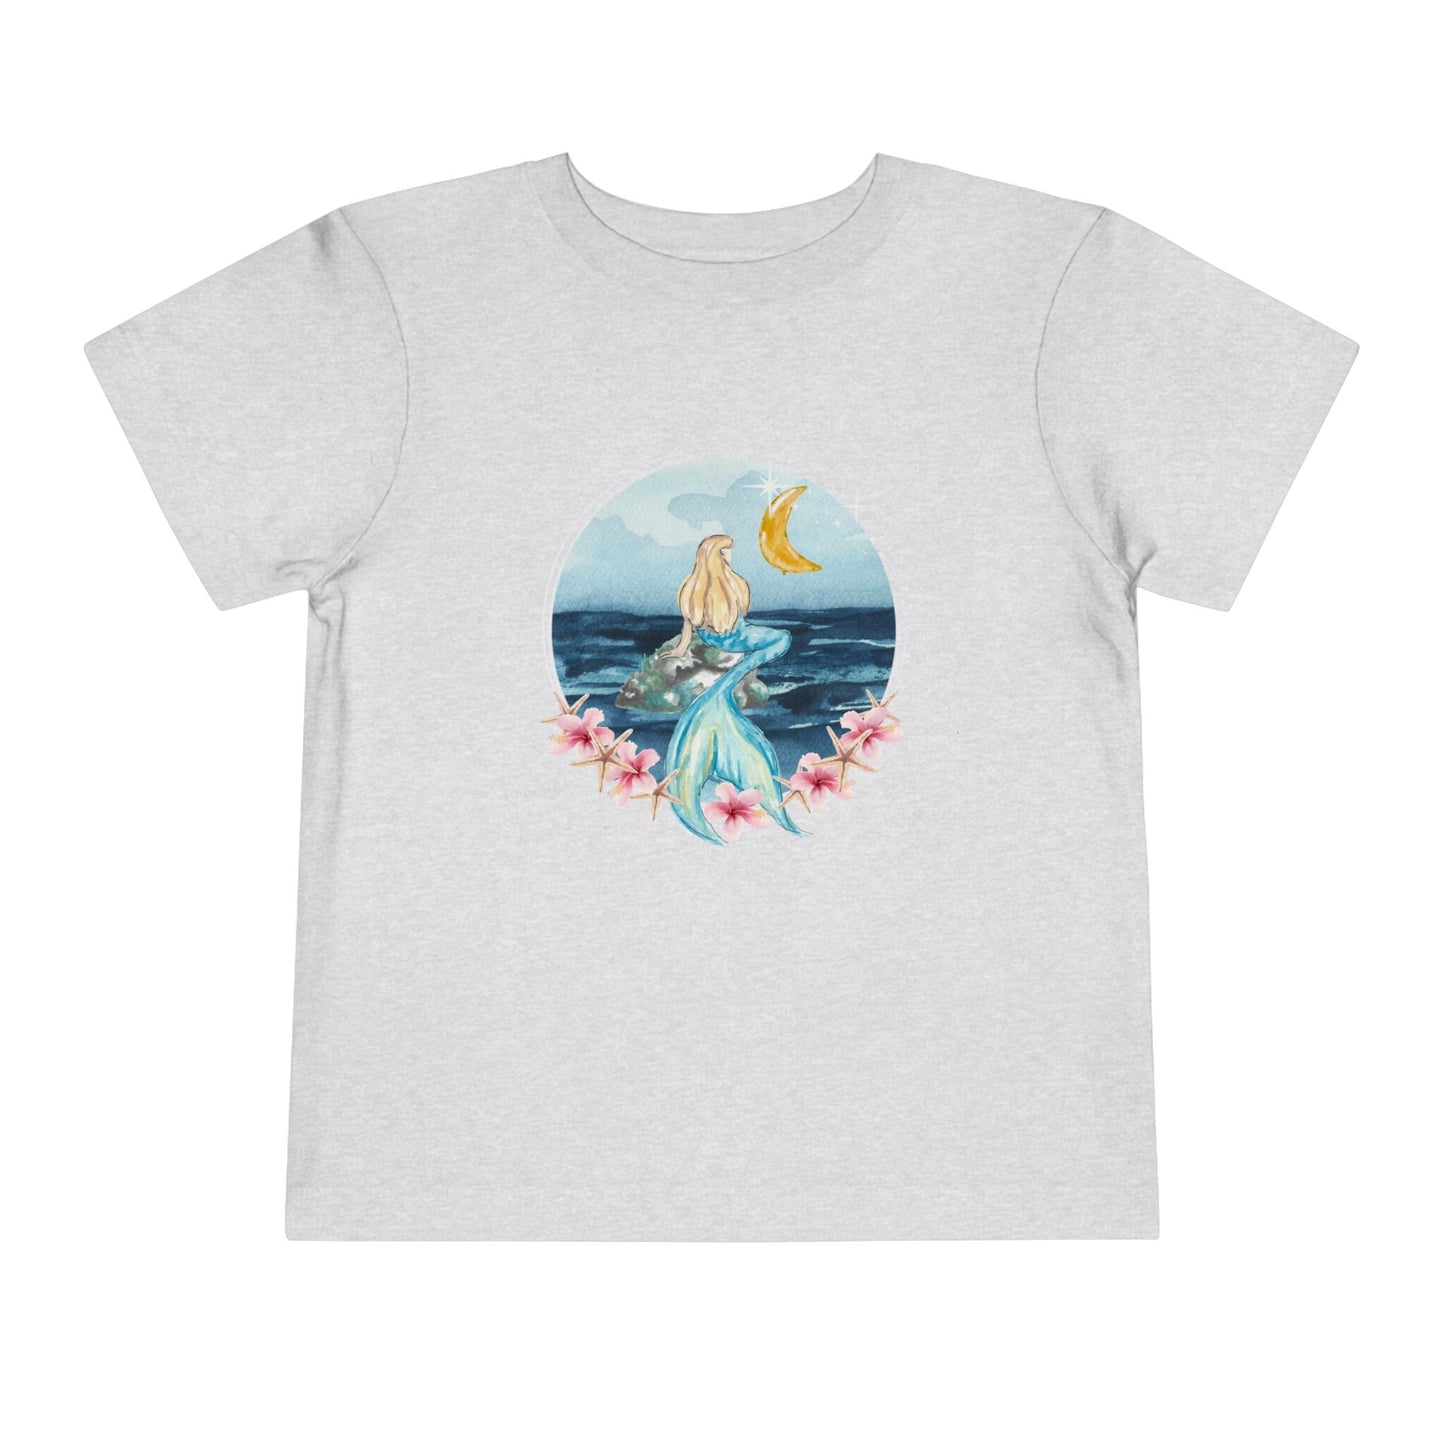 Mermaid Shirt Girl Hibiscus Shirt Starfish Moon Kids Shirt Ocean TShirt Oceancore MermaidCore Mermaid Aesthetic Mermaid Birthday Shirt Girl